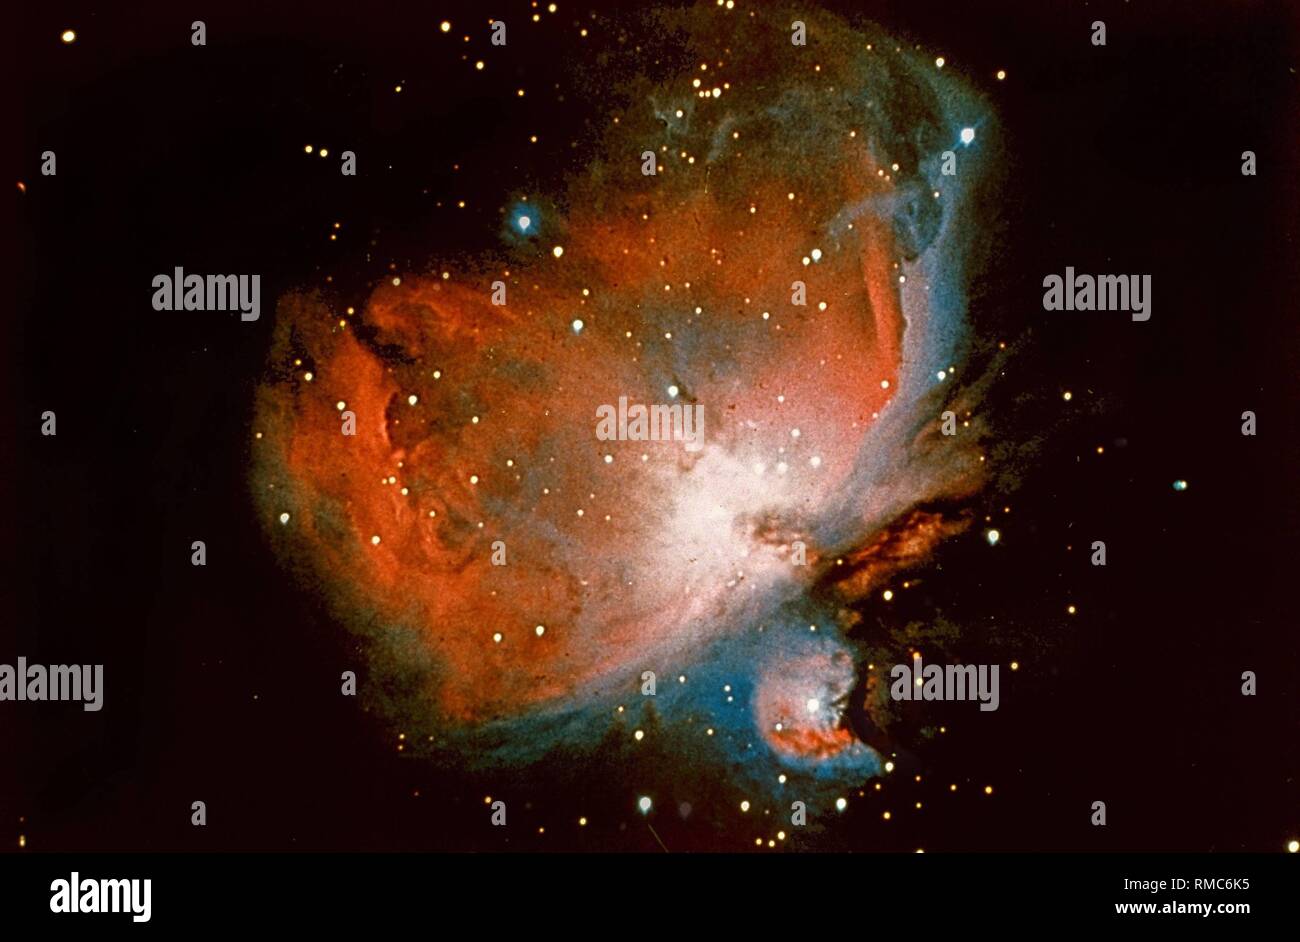 La Nébuleuse d'Orion (M42) se compose d'effondrement des nuages de gaz et  de poussière d'une masse gigantesque de la constellation d'Orion, le  chasseur. Dans le brouillard, il marque l'épée d'Orion accrochée à